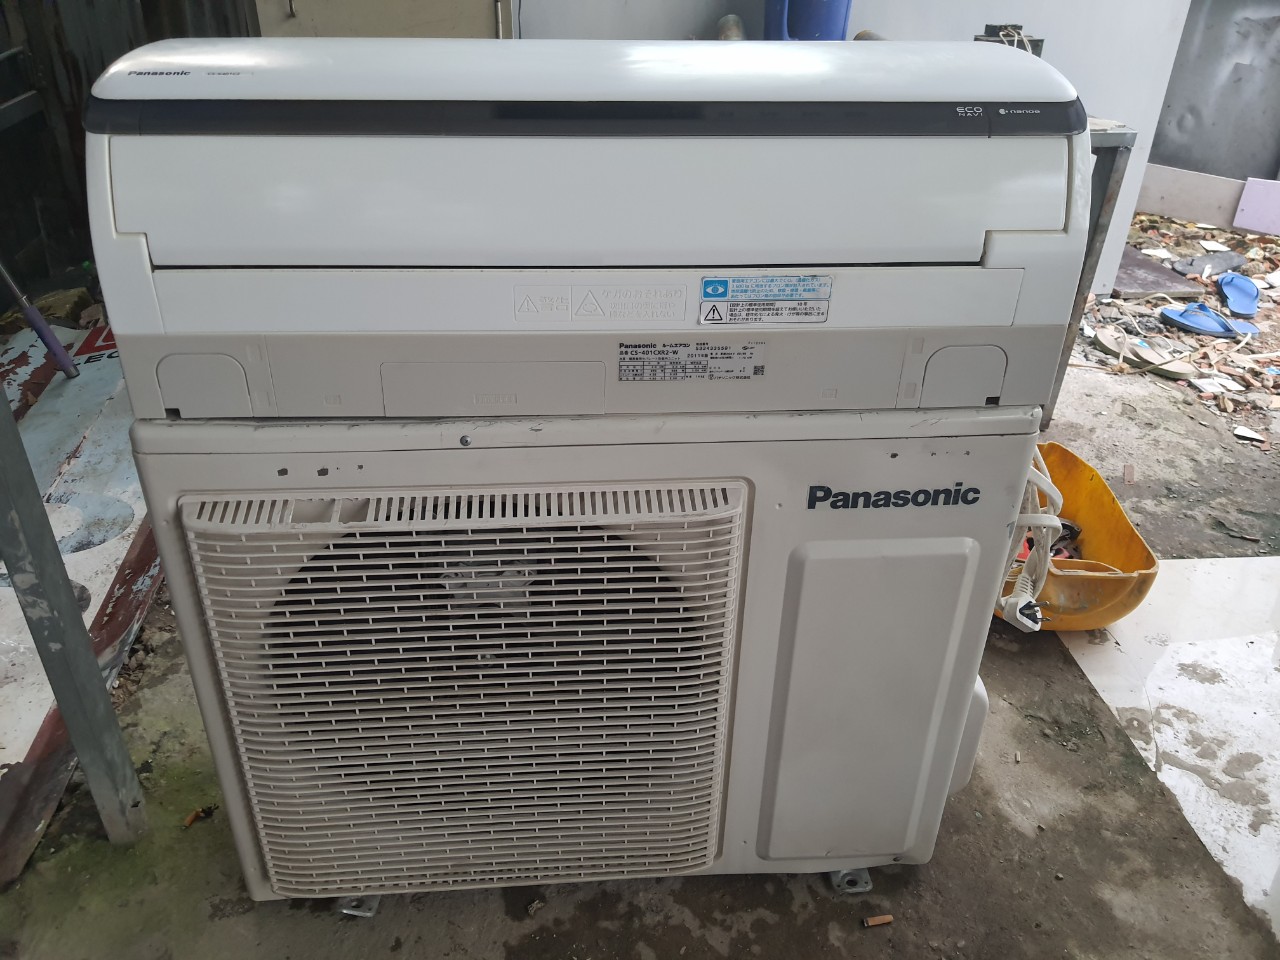 Máy lạnh Panasonic cũ là gì? Tuy được đánh giá là một thiết bị khá đắt tiền cũng như sử dụng một lượng điện năng quá lớn, thế nhưng máy lạnh vẫn dần có chỗ đứng trong lòng người tiêu dùng. Với thời tiết nắng nóng thì sở hữu một chiếc máy lạnh là giải pháp tốt nhất. Vì thế, nhu cầu sử dụng máy lạnh ngày càng cao. Panasonic là thương hiệu máy lạnh nổi tiếng và lâu đời. Máy lạnh Panasonic cũ là những chiếc máy lạnh đã qua sử dụng, được người chủ thanh lý lại cho các cửa hàng. Chất lượng của những chiếc máy này còn khá tốt. Bên cạnh đó, khả năng làm lạnh, lọc không khí vẫn đảm bảo. Giá thành khá thấp nên là lựa chọn tốt cho những gia đình có chi tiêu trung bình. Các cửa hàng rất ưa chuộng mua máy lạnh Panasonic cũ để bán lại do nhu cầu của người mua rất cao.  Thanh lý máy lạnh Panasonic cũ cung cấp những dịch vụ gì? Bạn đang làm việc, sinh sống ở TP.HCM và sở hữu một chiếc máy lạnh Panasonic cũ thì việc nên làm là thanh lý ngay cho cửa hàng đồ cũ. Khi chọn thanh lý cho cửa hàng, bạn sẽ nhận được số tiền mua thanh lý để có thể tiết kiệm, mua lại thiết bị mới. Bên cạnh đó, việc này giúp bạn tiết kiệm được diện tích ở nhà khi không phải chứa đồ dùng cũ.  Nếu là trường hợp bạn cần mua lại máy lạnh thanh lý thì tìm đến các cửa hàng đồ cũ là một lựa chọn nhanh chóng và tiện lợi. Tại các cửa hàng đồ cũ, bạn sẽ được đảm bảo về chất lượng sản phẩm cũng như có các dịch vụ bảo hành đi kèm. Máy lạnh đã qua sử dụng tuy có bề ngoài không còn được mới nhưng về chất lượng thì khá đảm bảo. Nếu bạn yêu cầu không quá cao về máy lạnh, có khoản chi tiêu không lớn thì máy lạnh Panasonic cũ là lựa chọn tối ưu mà bạn nên cân nhắc.  Những loại máy lạnh Panasonic cũ thường được thanh lý Máy lạnh Panasonic được phát triển nhiều dòng, nhiều kiểu dáng để phù hợp với nhu cầu của nhiều phân khúc khách hàng khác nhau. Vì thế bạn có thể dễ dàng tìm được nhiều dòng máy lạnh Panasonic mà bạn muốn như: Máy lạnh Panasonic âm trần cũ Máy lạnh tủ đứng Panasonic Máy lạnh Panasonic thường Máy lạnh Panasonic công nghiệp cũ Máy lạnh inverter Panasonic  Máy lạnh Panasonic 1 ngựa cũ Máy lạnh Panasonic 2 ngựa cũ Và các dòng máy lạnh cũ của các thương hiệu khác. Vì sao thanh lý máy lạnh Panasonic cũ? Do là thị trường có sức phát triển lớn nên máy lạnh Panasonic cũ được các cửa hàng điện lạnh rất ưu ái, săn đón để mua được. Khi sử dụng dịch vụ thu mua máy lạnh cũ Panasonic, người bán sẽ thu lại cho mình được một khoản tiền để tiết kiệm. Bên cạnh đó, khách hàng có nhu cầu chuyển nhà, dọn nhà cũng tiết kiệm được chi phí vận chuyển, dọn dẹp do đã có cửa hàng hỗ trợ. Hơn thế nữa, khách hàng sẽ không phải lo về vấn đề kho chứa do máy lạnh chiếm diện tích lớn. Chỉ cần thanh lý lại máy lạnh sẽ nhanh chóng giải phóng được mặt bằng để sử dụng vào mục đích khác. Đối với các khách hàng muốn mua lại máy lạnh Panasonic cũ, sẽ giúp họ tiết kiệm được một khoản chi phí khá nhiều so với mua thiết bị mới.  Hơn thế nữa, thu mua máy lạnh Panasonic cũ còn góp phần mang lại những ảnh hưởng tích cực cho môi trường. Việc sử dụng lại các sản phẩm mới, còn hoạt động tốt sẽ giúp giảm lượng rác thải ra ngoài môi trường một cách hiệu quả.  Lợi ích việc thanh lý máy lạnh Panasonic cũ   Thường thì việc mua bán các sản phẩm sẽ do bên mua tìm đến bên bán để trao đổi và tiến hành. Thế nhưng, khi bạn cần thanh lý gấp và không thể tìm được người mua thì sẽ rất phiền. Vì thế mà dịch vụ thanh lý máy lạnh Panasonic cũ ra đời. Với dịch vụ này, khách hàng không cần lo lắng về việc có thể thanh lý đồ cũ nhanh chóng được hay không. Người bán và người mua có thể làm việc qua cửa hàng mà không cần phải gặp nhau. Bên cạnh đó, dịch vụ này còn đảm bảo người bán thanh lý nhanh và người mua có thể nhận được các sản phẩm đã được kiểm tra chất lượng kĩ càng.  Hơn thế nữa, khi sử dụng dịch vụ thanh lý máy lạnh Panasonic cũ bạn còn được tư vấn về các dịch vụ đi kèm như mua lại các sản phẩm giá tốt, bán trọn gói để có mức giá thu mua tốt hơn,... Bạn không cần phải tự vận chuyển hàng hóa đến cửa hàng, mà sẽ được hỗ trợ tháo dỡ và vận chuyển trọn gói.  Điện lạnh Tiến Lên thanh lý máy lạnh Panasonic cũ như thế nào? Biết được những khó khăn mà khách hàng đang gặp phải, Điện lạnh Tiến Lên gửi đến bạn dịch vụ thanh lý máy lạnh Panasonic cũ giá cao. Chúng tôi được biết đến là đơn vị chuyên thanh lý và thu mua đồ dùng, thiết bị khách sạn uy tín. Với mục đích hỗ trợ khách hàng một cách nhanh chóng nhất, giúp khách hàng bán máy lạnh Panasonic cũ với giá cao nhất, Tiến Lên luôn nỗ lực mang đến các dịch vụ với quy trình thu mua đơn giản, nhanh chóng cũng như chuyên nghiệp nhất. Cùng tham khảo các phần tiếp theo để có cái nhìn cụ thể hơn. Quy trình thanh lý máy lạnh Panasonic cũ Trong nhiều năm gần đây, chúng tôi luôn được khách hàng tin tưởng lựa chọn về dịch vụ thanh lý máy lạnh cũ. Có được điều đó là do chúng tôi mang đến cho khách hàng quy trình thu mua tối ưu, hiệu quả nhất. Tham khảo quy trình chi tiết ngay bên dưới:  Bước 1: Tiếp nhận thông tin về sản phẩm thanh lý qua số hotline 0914617089 Bước 2: Đặt lịch hẹn và phân công nhân viên đến khách sạn để tiến hành kiểm tra máy lạnh.  Bước 3: Nhân viên đến nơi, kiểm tra và báo giá theo giá niêm yết của khách sạn. Bước 4: Thỏa thuận với khách hàng. Thanh toán tiền thu mua khi đã thỏa thuận xong. Bước 5: Tiến hành tháo dỡ, vận chuyển ngay trong ngày để khách hàng tiếp tục công việc. Hỗ trợ  Đến với Điện lạnh Tiến Lên, bạn sẽ không cần lo lắng về tình trạng ép giá thu mua máy lạnh Panasonic cũ. Chúng tôi luôn cam kết mức giá thu mua của Tiến Lên luôn ở mức cao trên thị trường. Với bất kì thắc mắc về dịch vụ hay có phản ảnh về quy trình, thái độ của nhân viên của chúng tôi, hãy gọi ngay đến số hotline 0914617089. Chúng tôi rất sẵn lòng lắng nghe, giải đáp và tiếp thu các ý kiến từ khách hàng. Tiến Lên luôn đón tiếp bạn đến với cửa hàng một ngày sớm nhất. 